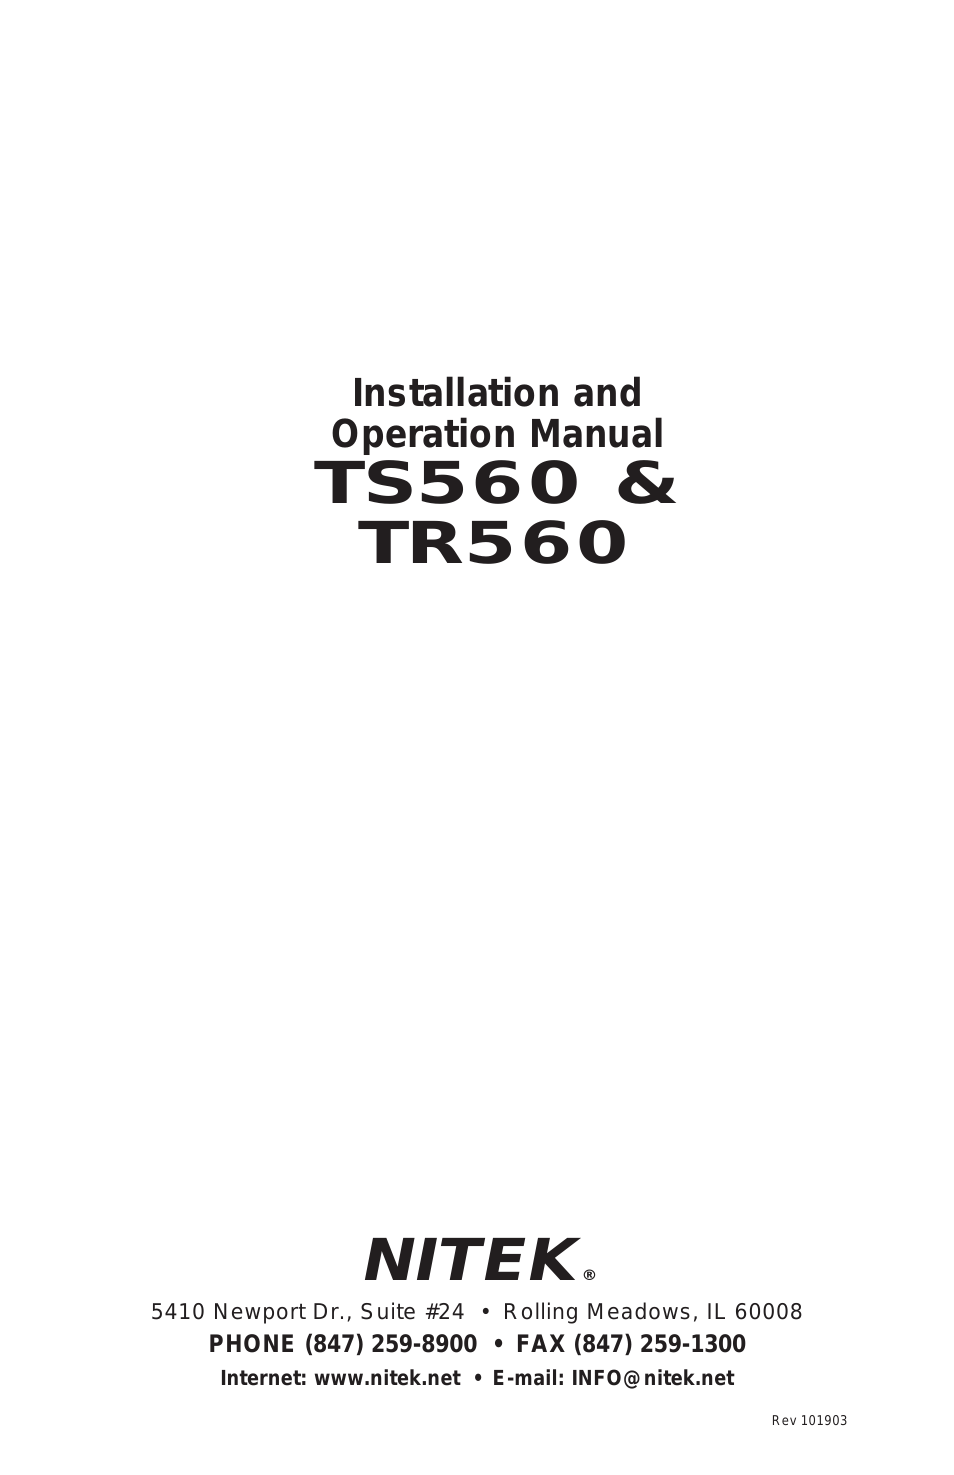 TR560